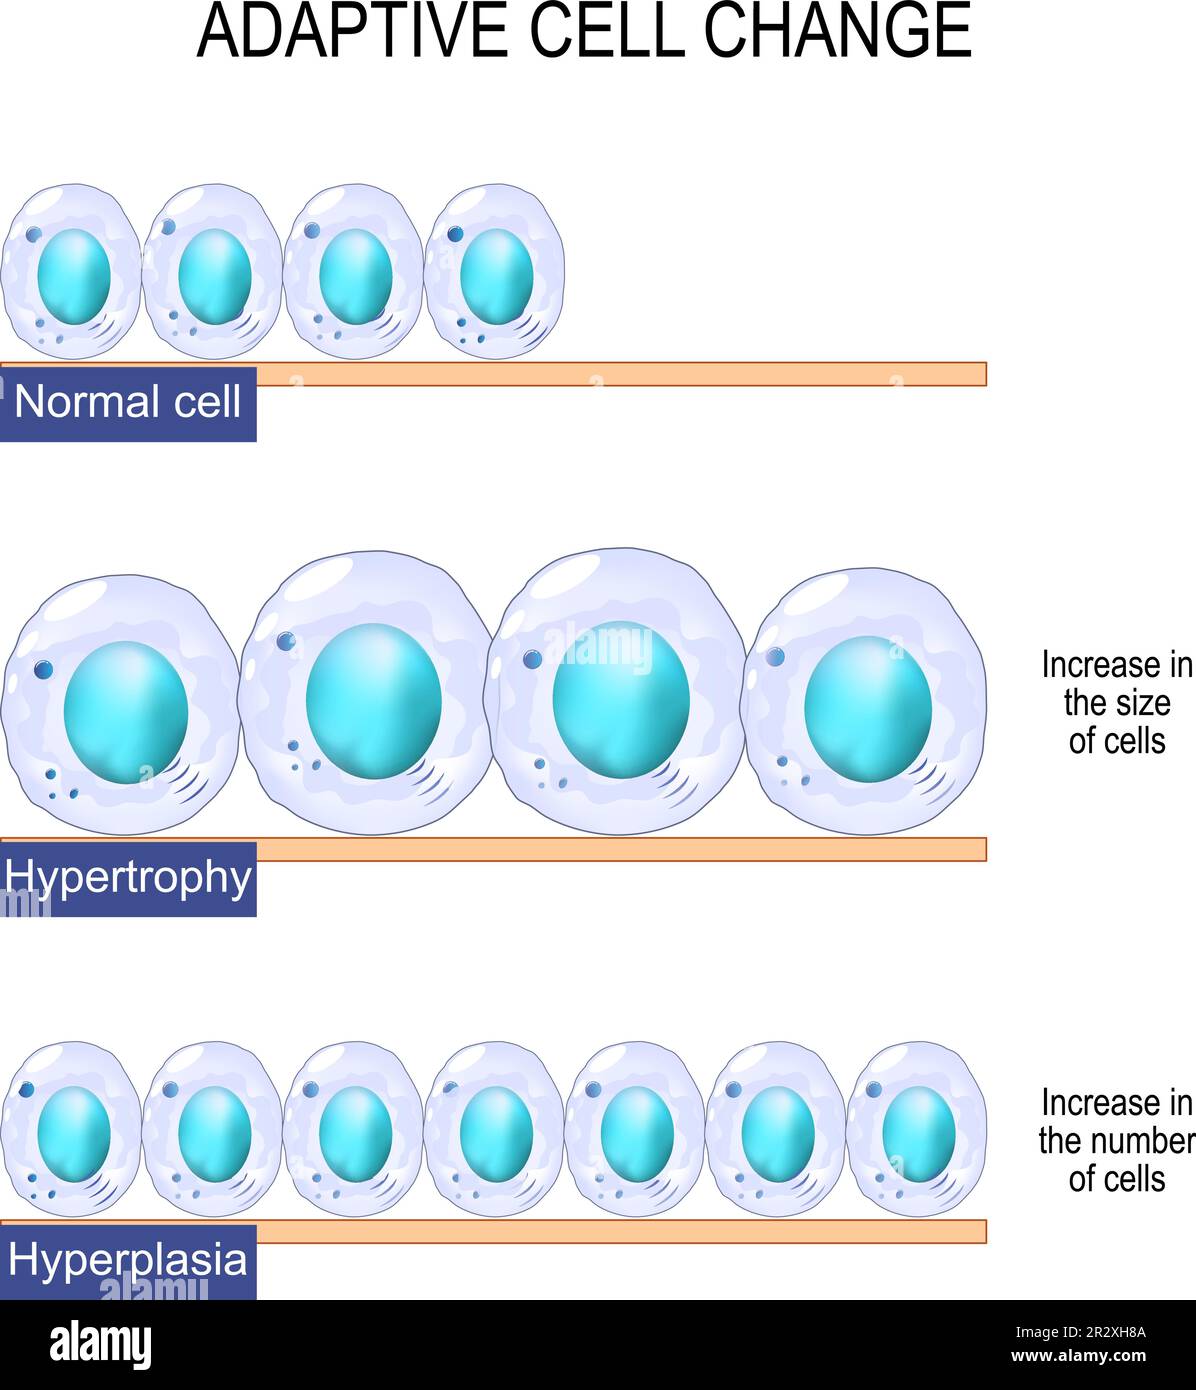 changement de cellule adaptatif. Cellule normale, l'hypertrophie est une augmentation de la taille des cellules, et l'hyperplasie - augmentation du nombre de cellules. Affiche vectorielle Illustration de Vecteur